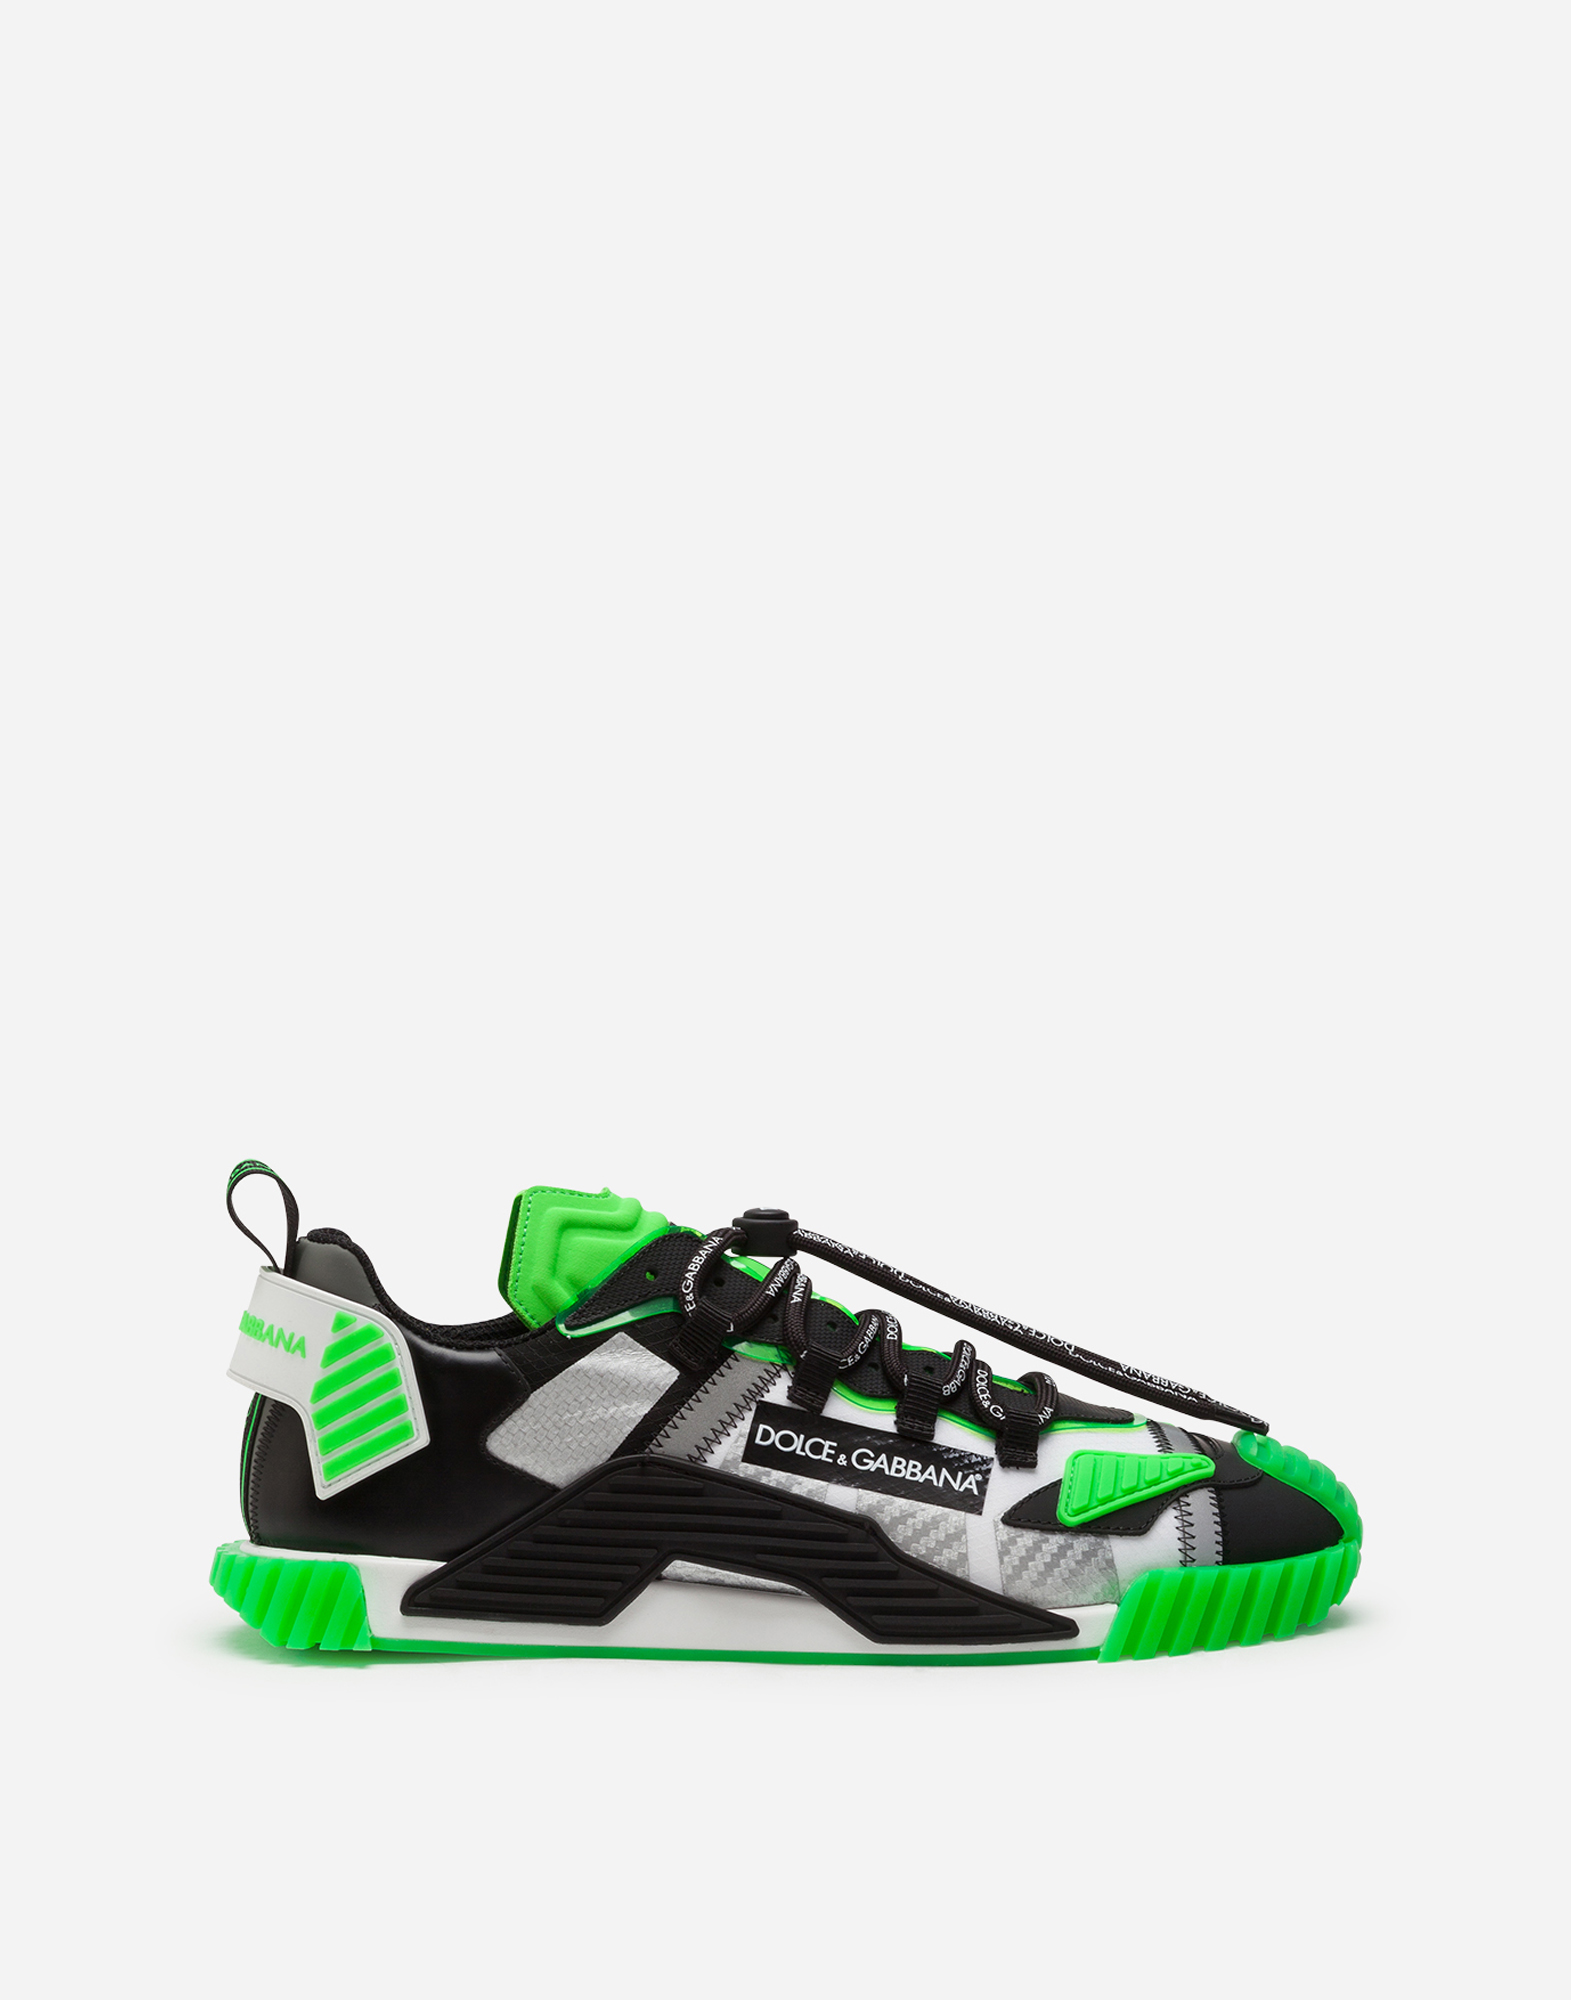 dolce gabbana green shoes